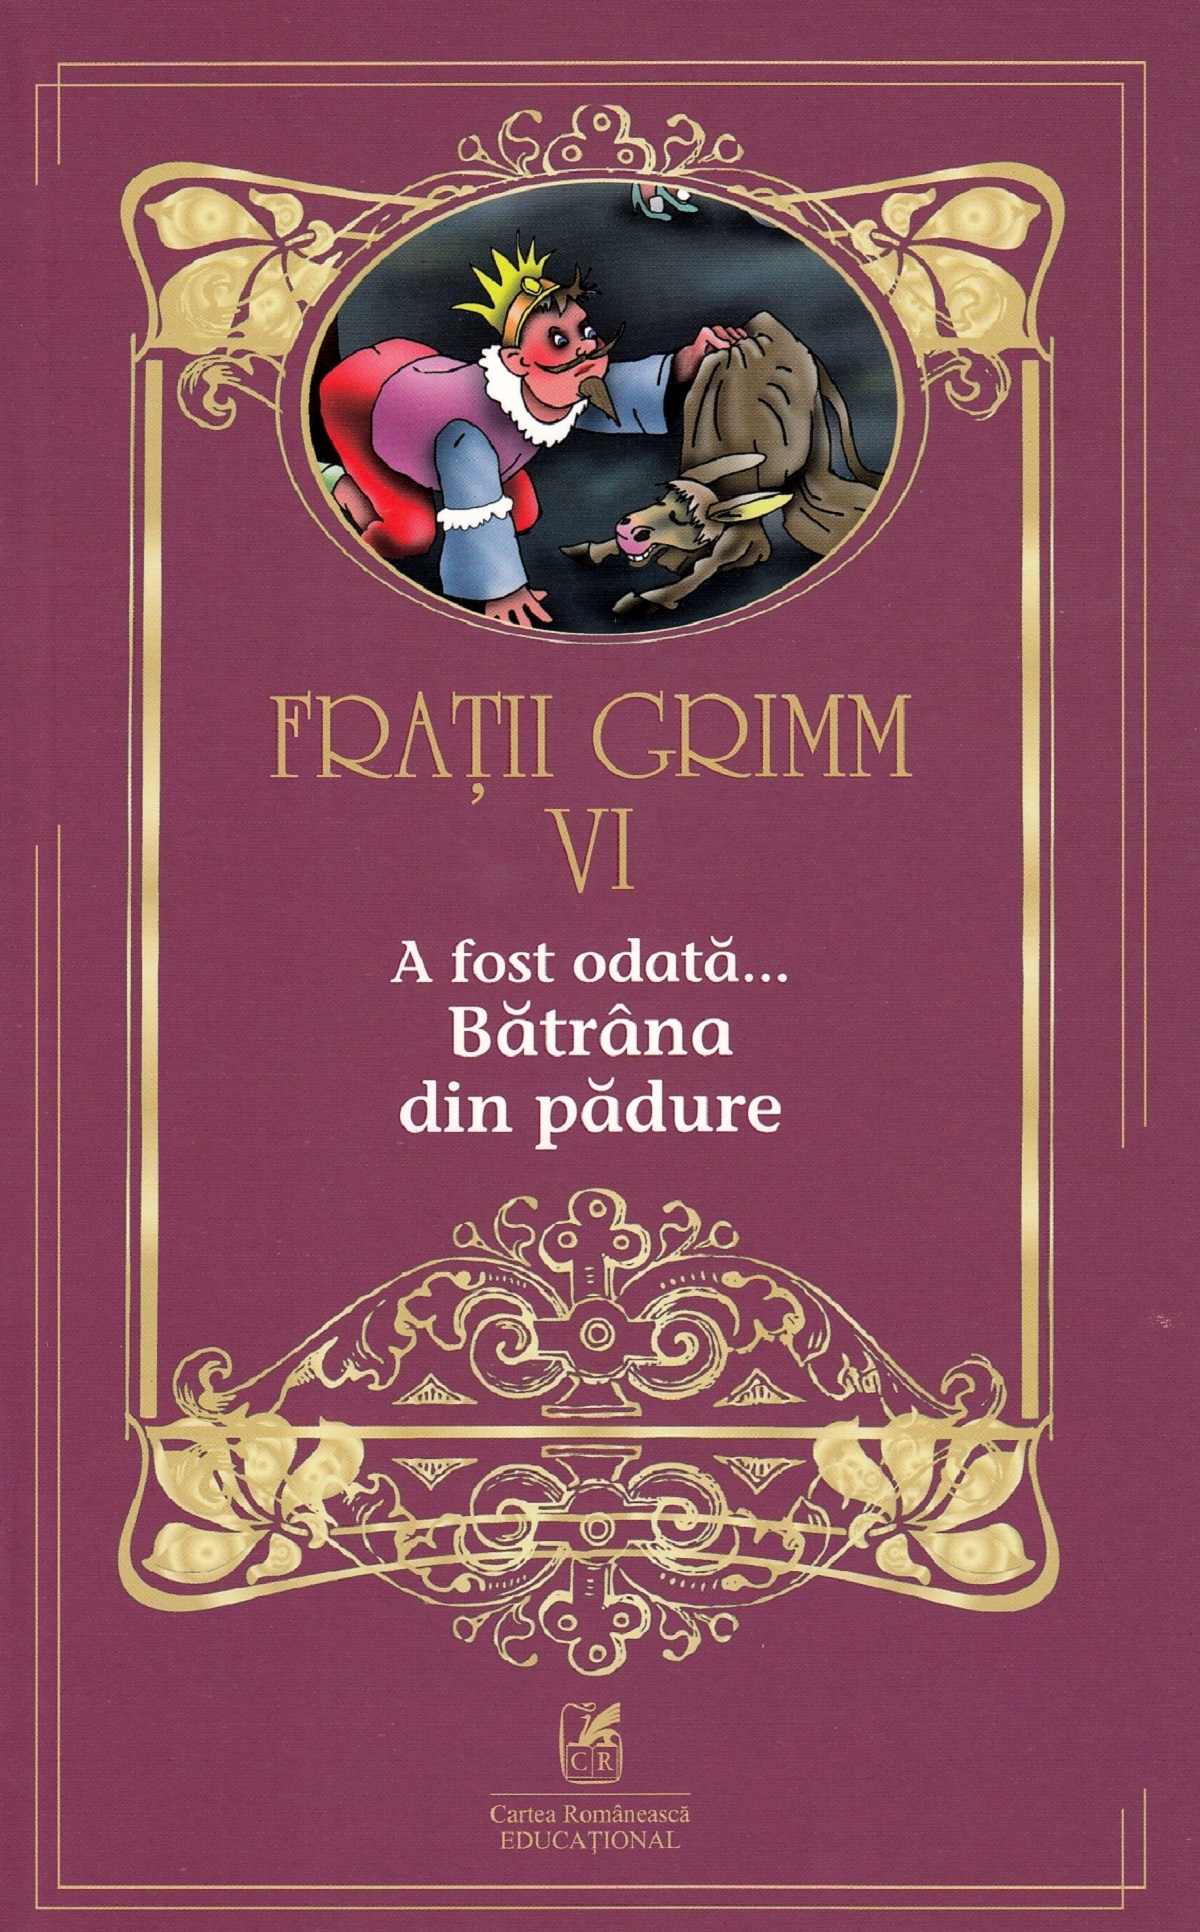 A fost odata…Batrana din padure | Fratii Grimm Cartea Romaneasca educational Carte